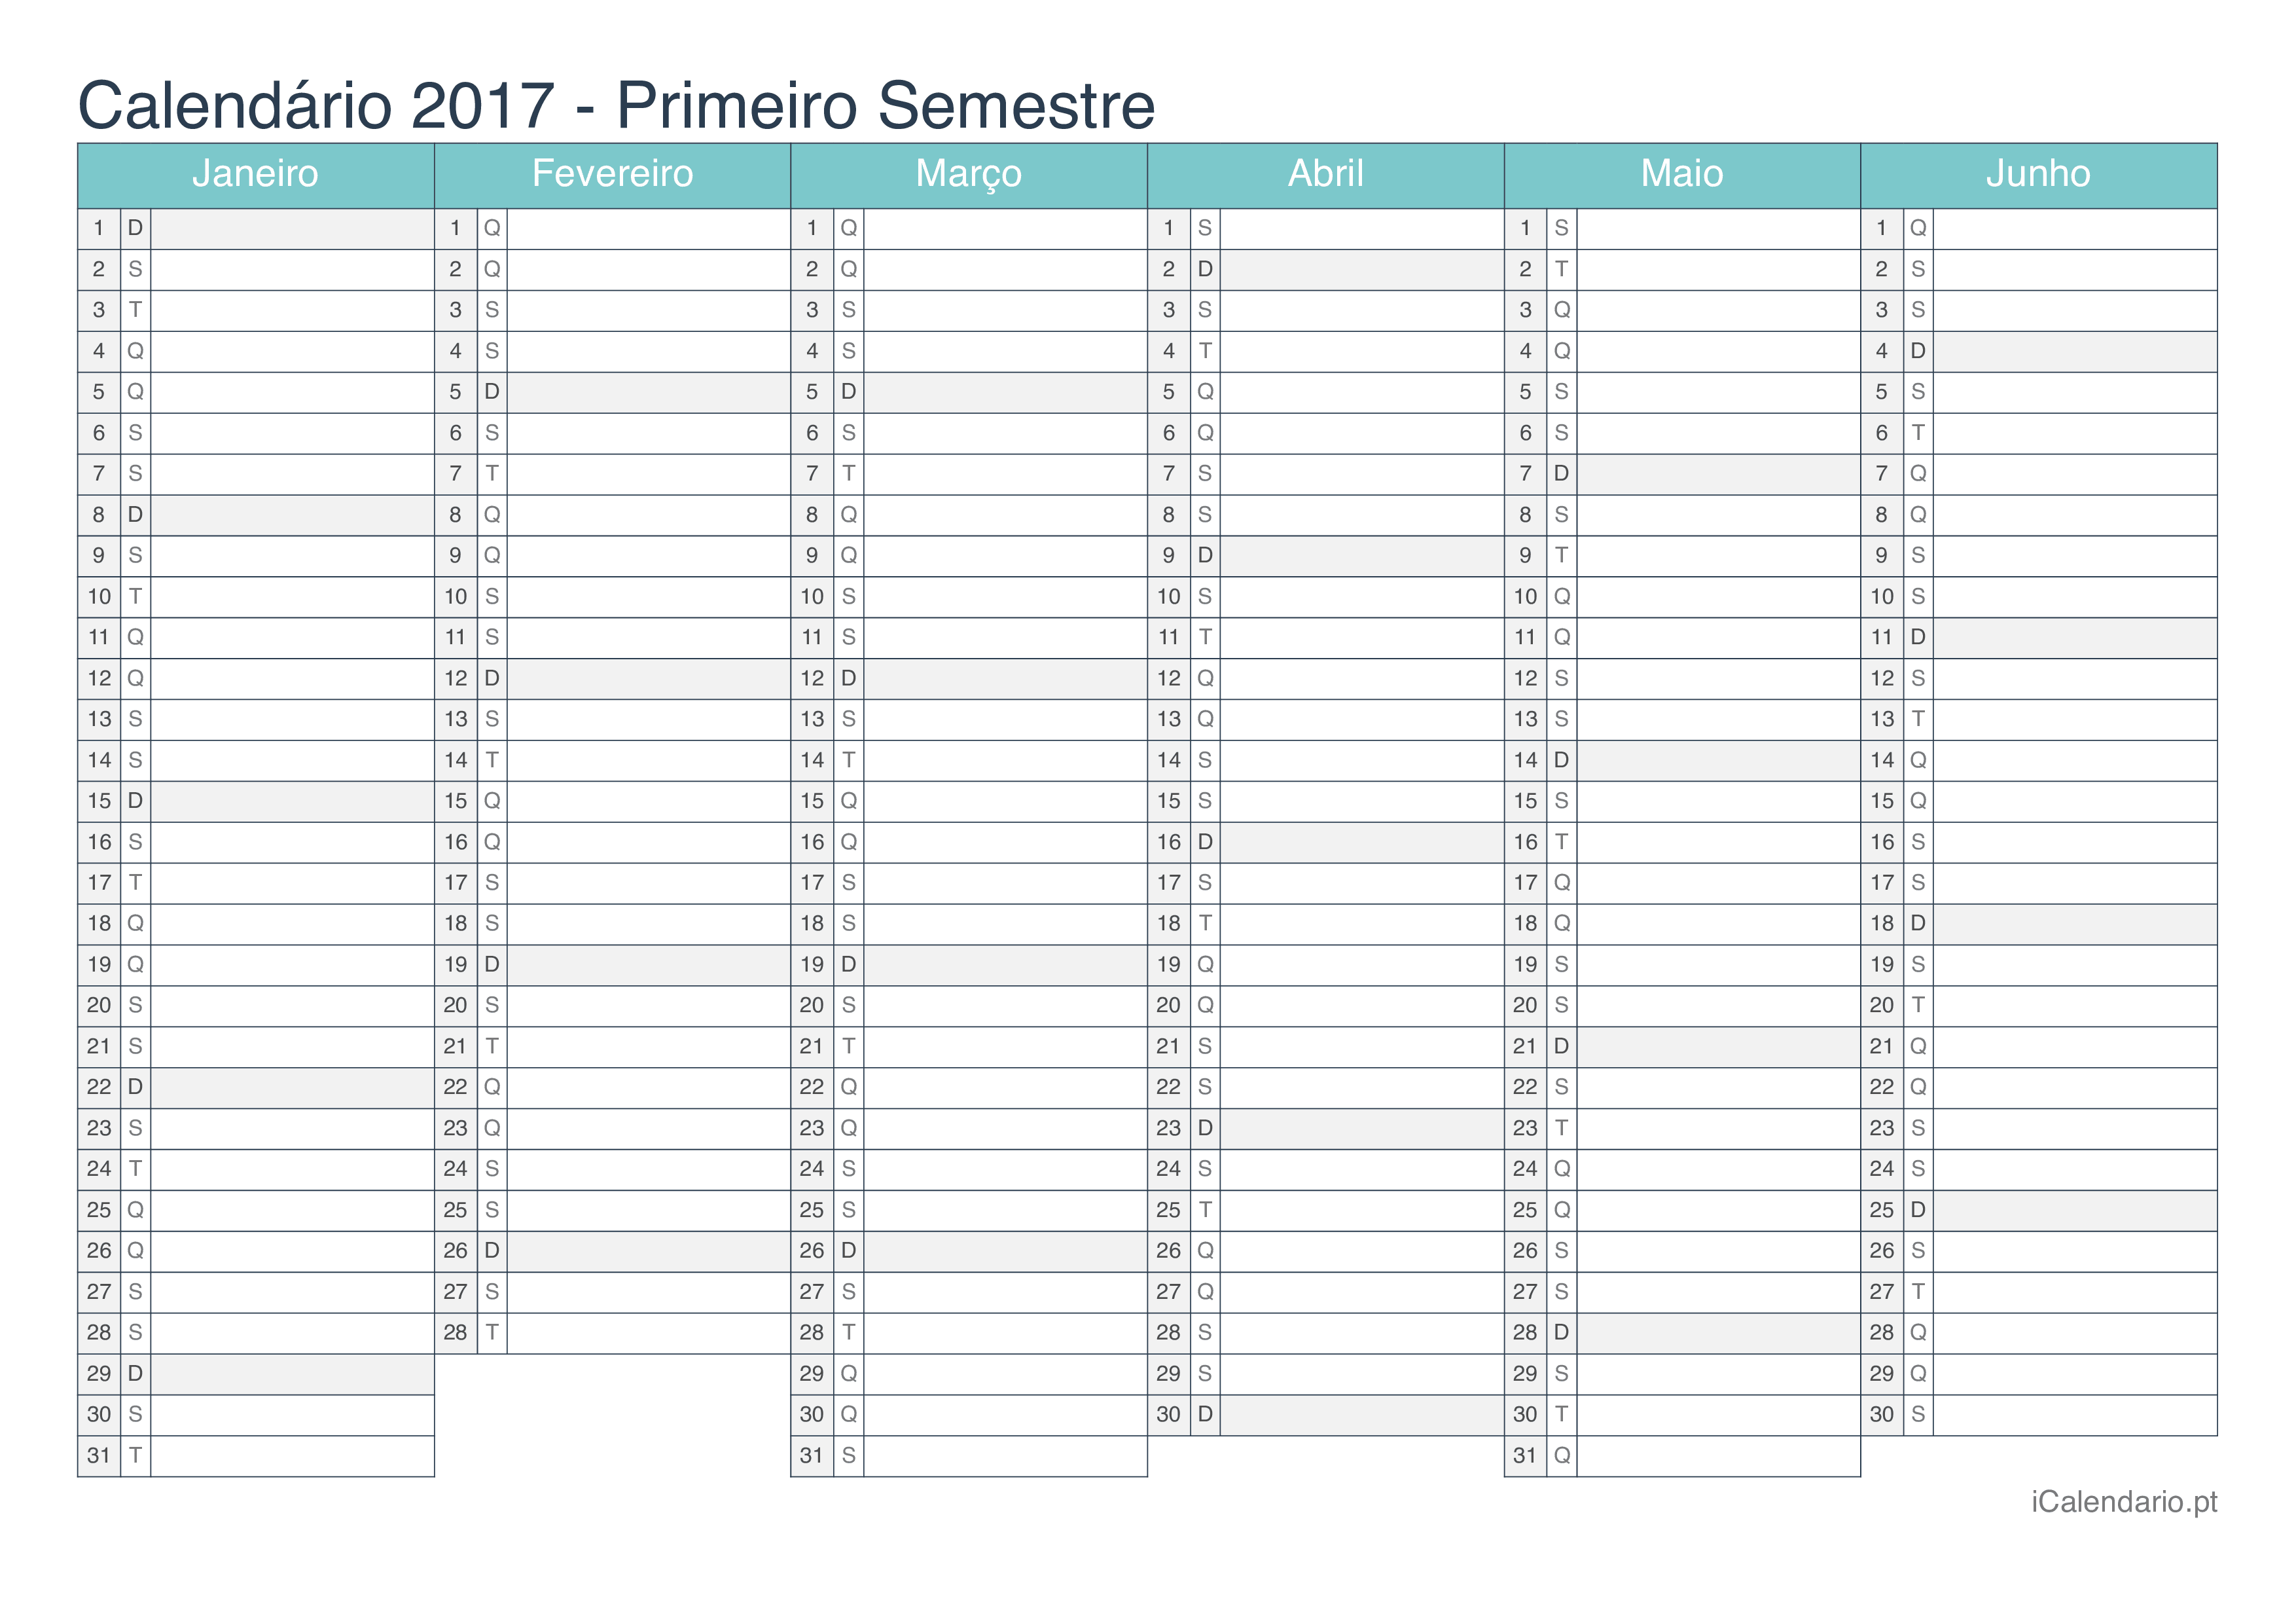 Calendário por semestre 2017 - Turquesa